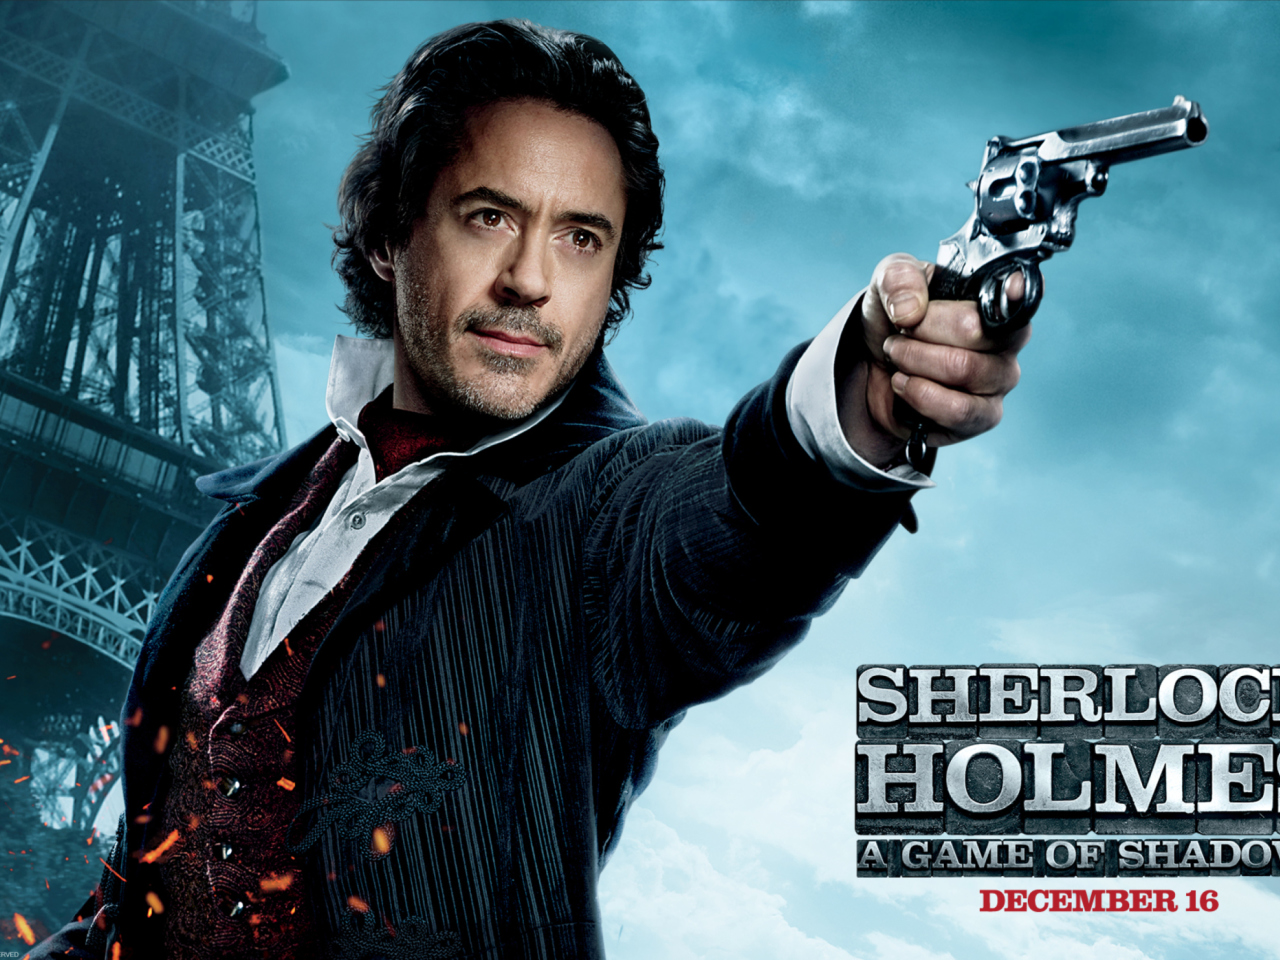 Robert Downey Jr In Sherlock Holmes 2 wallpaper 1280x960